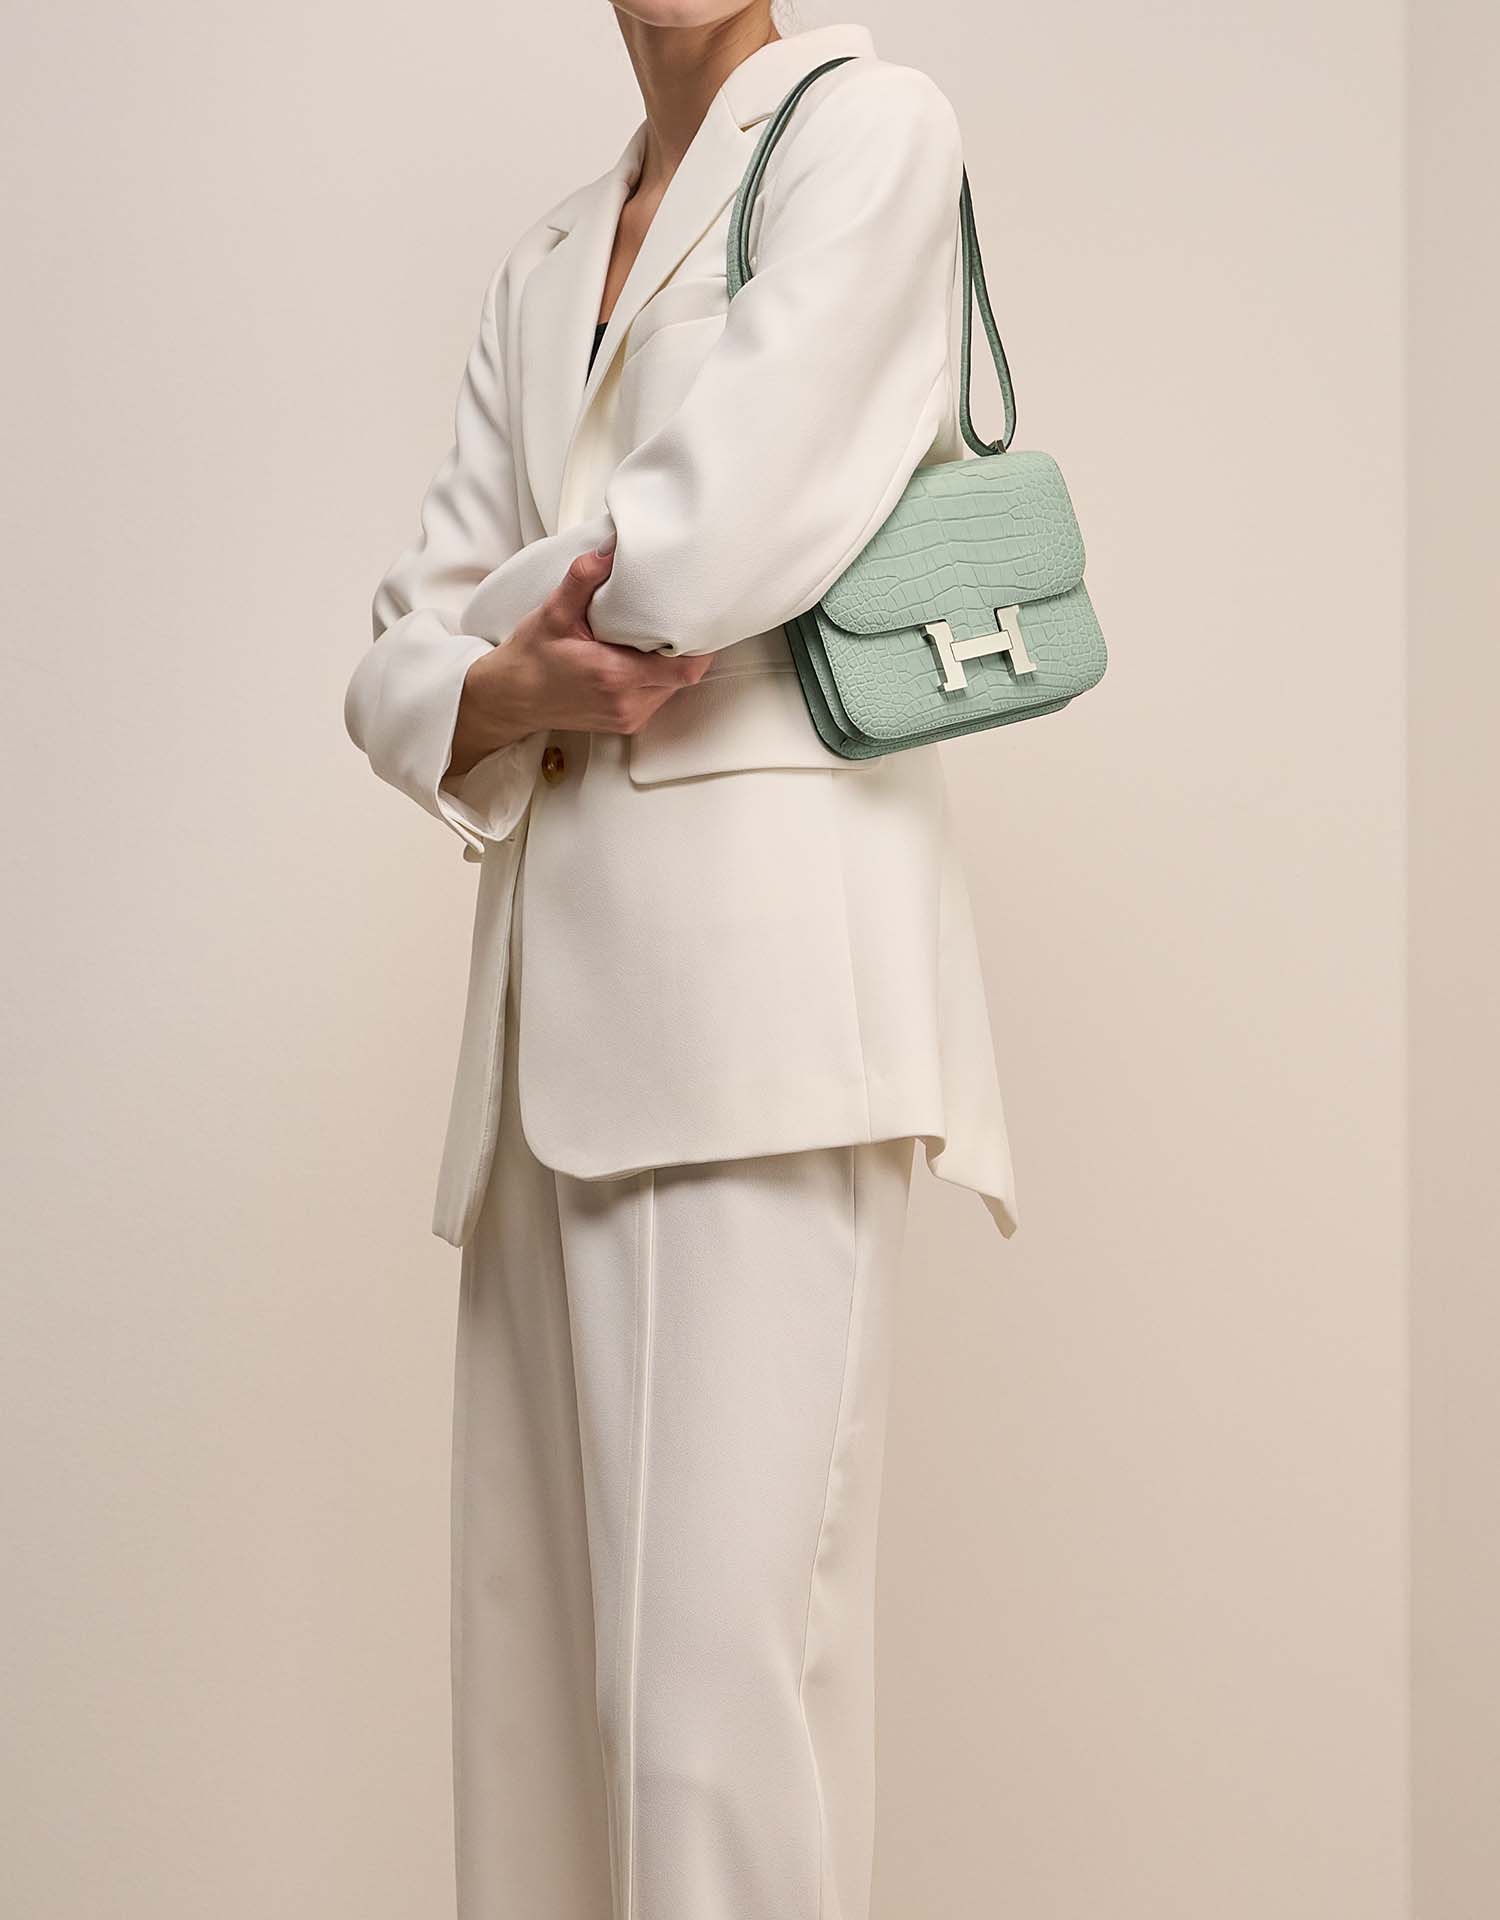 Hermès Constance 18 VertD'Eeau on Model | Sell your designer bag on Saclab.com